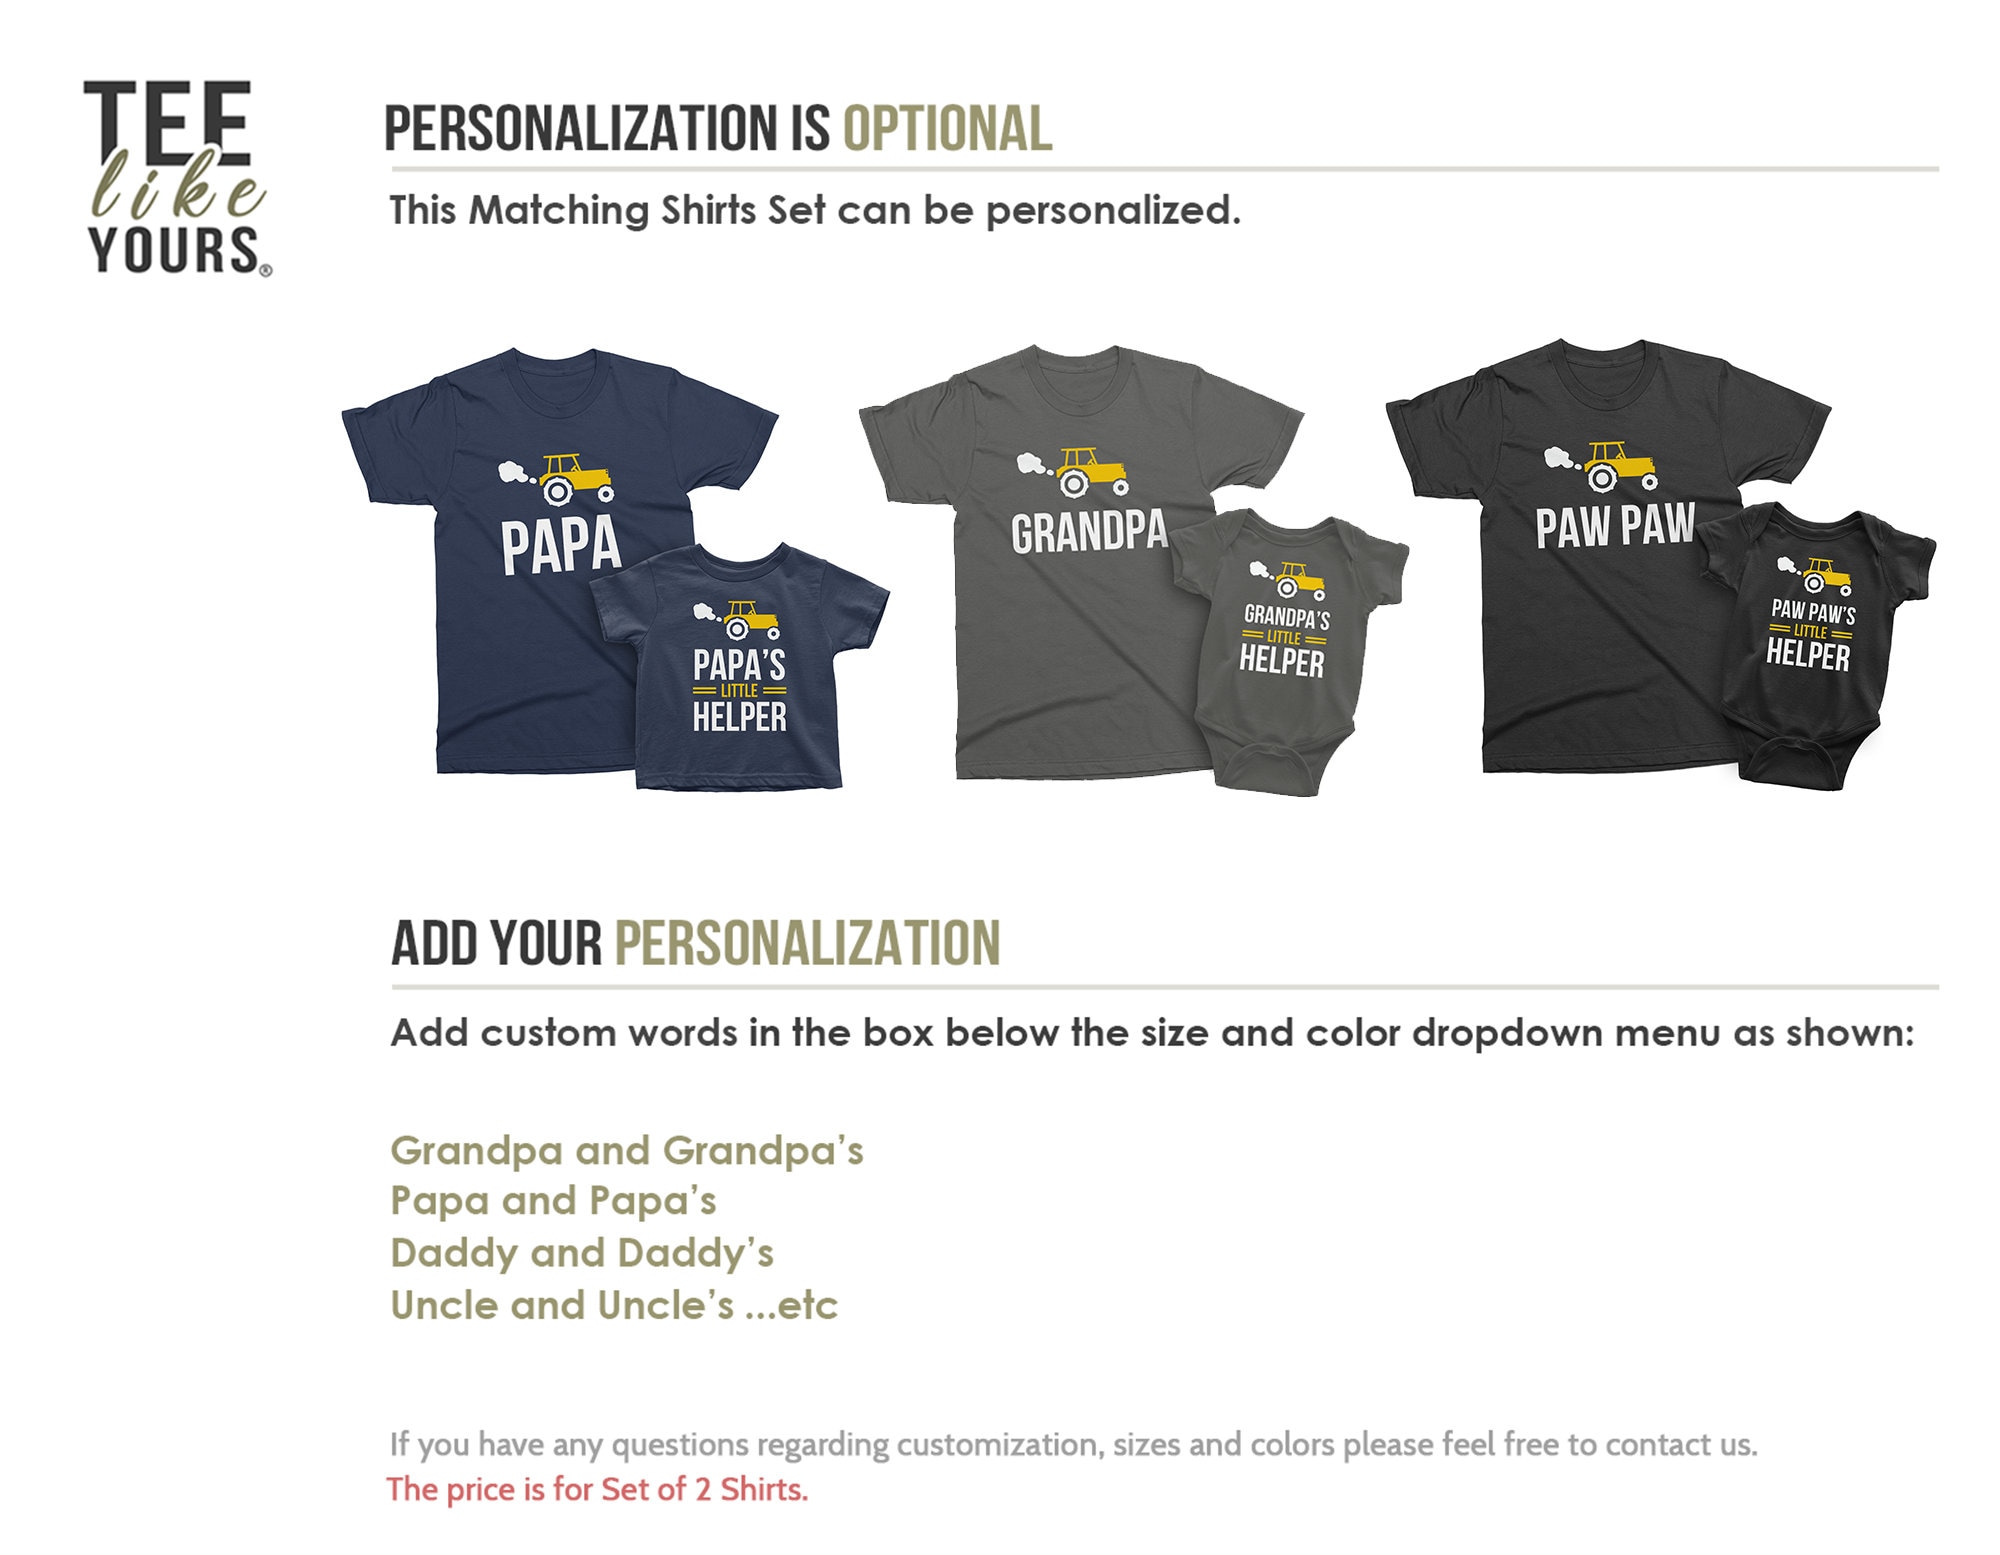 Papa's Cupcakeria Logo Essential T-Shirt for Sale by apparel-agenda